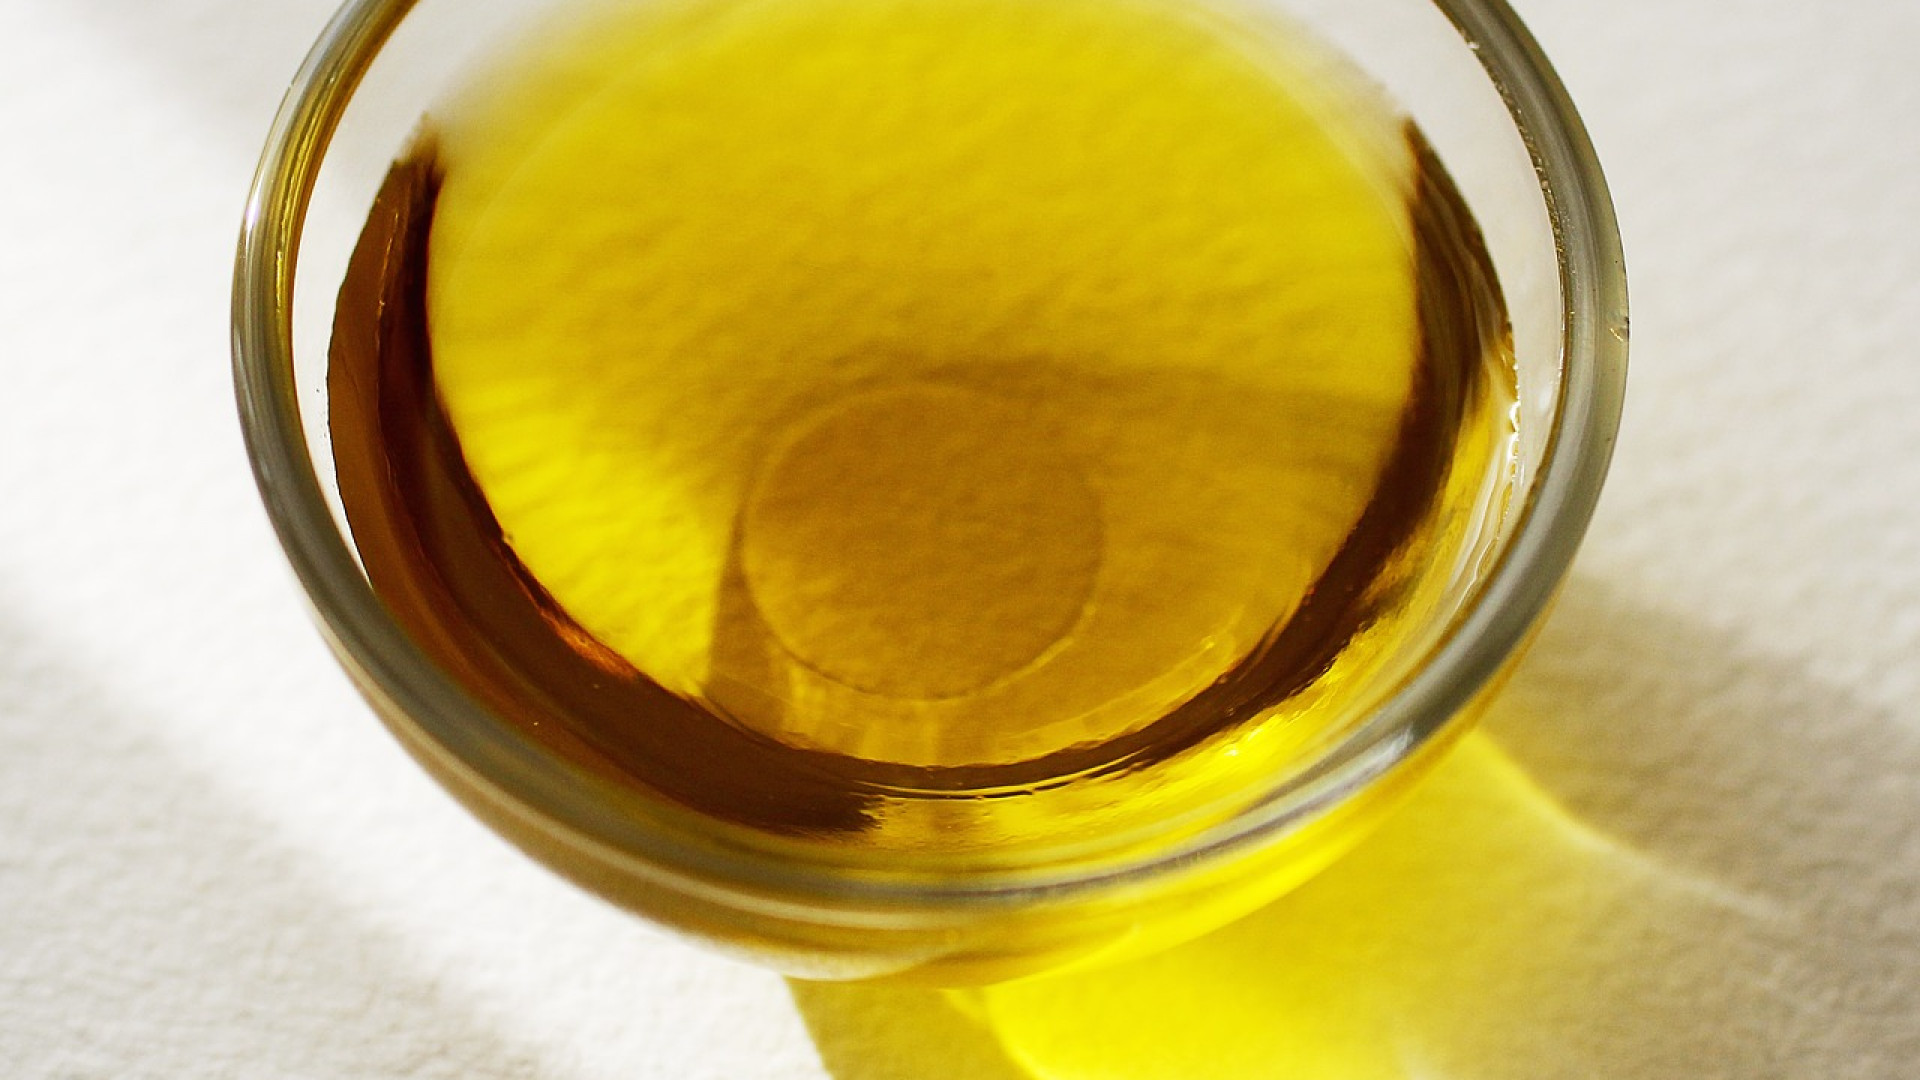 Comment bronzer vite avec de l’huile d’olive ?